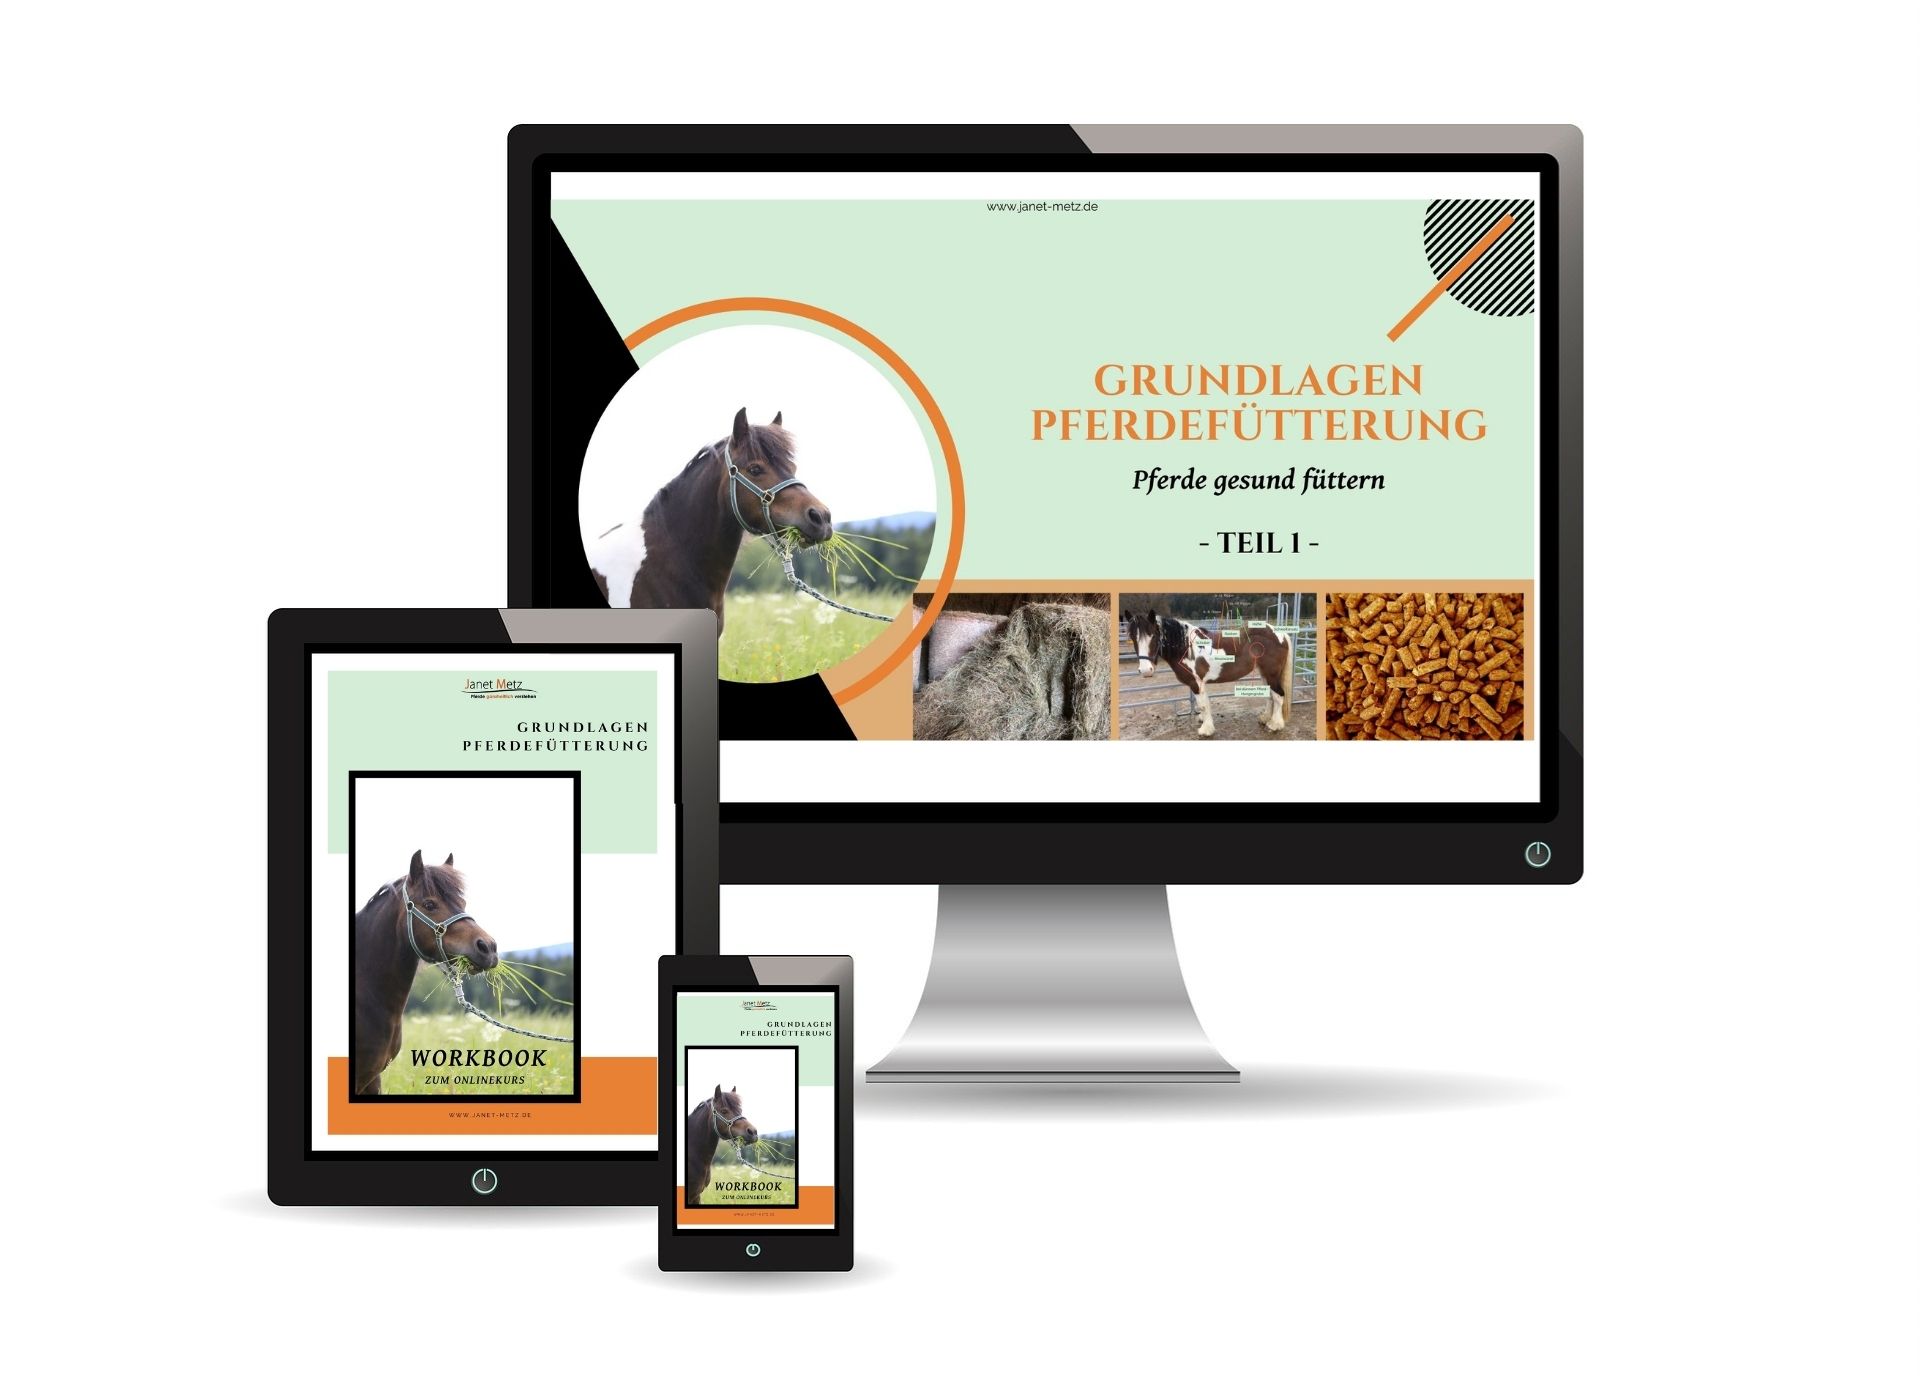 Dein Infomagazin für ganzheitliche Pferdegesundheit